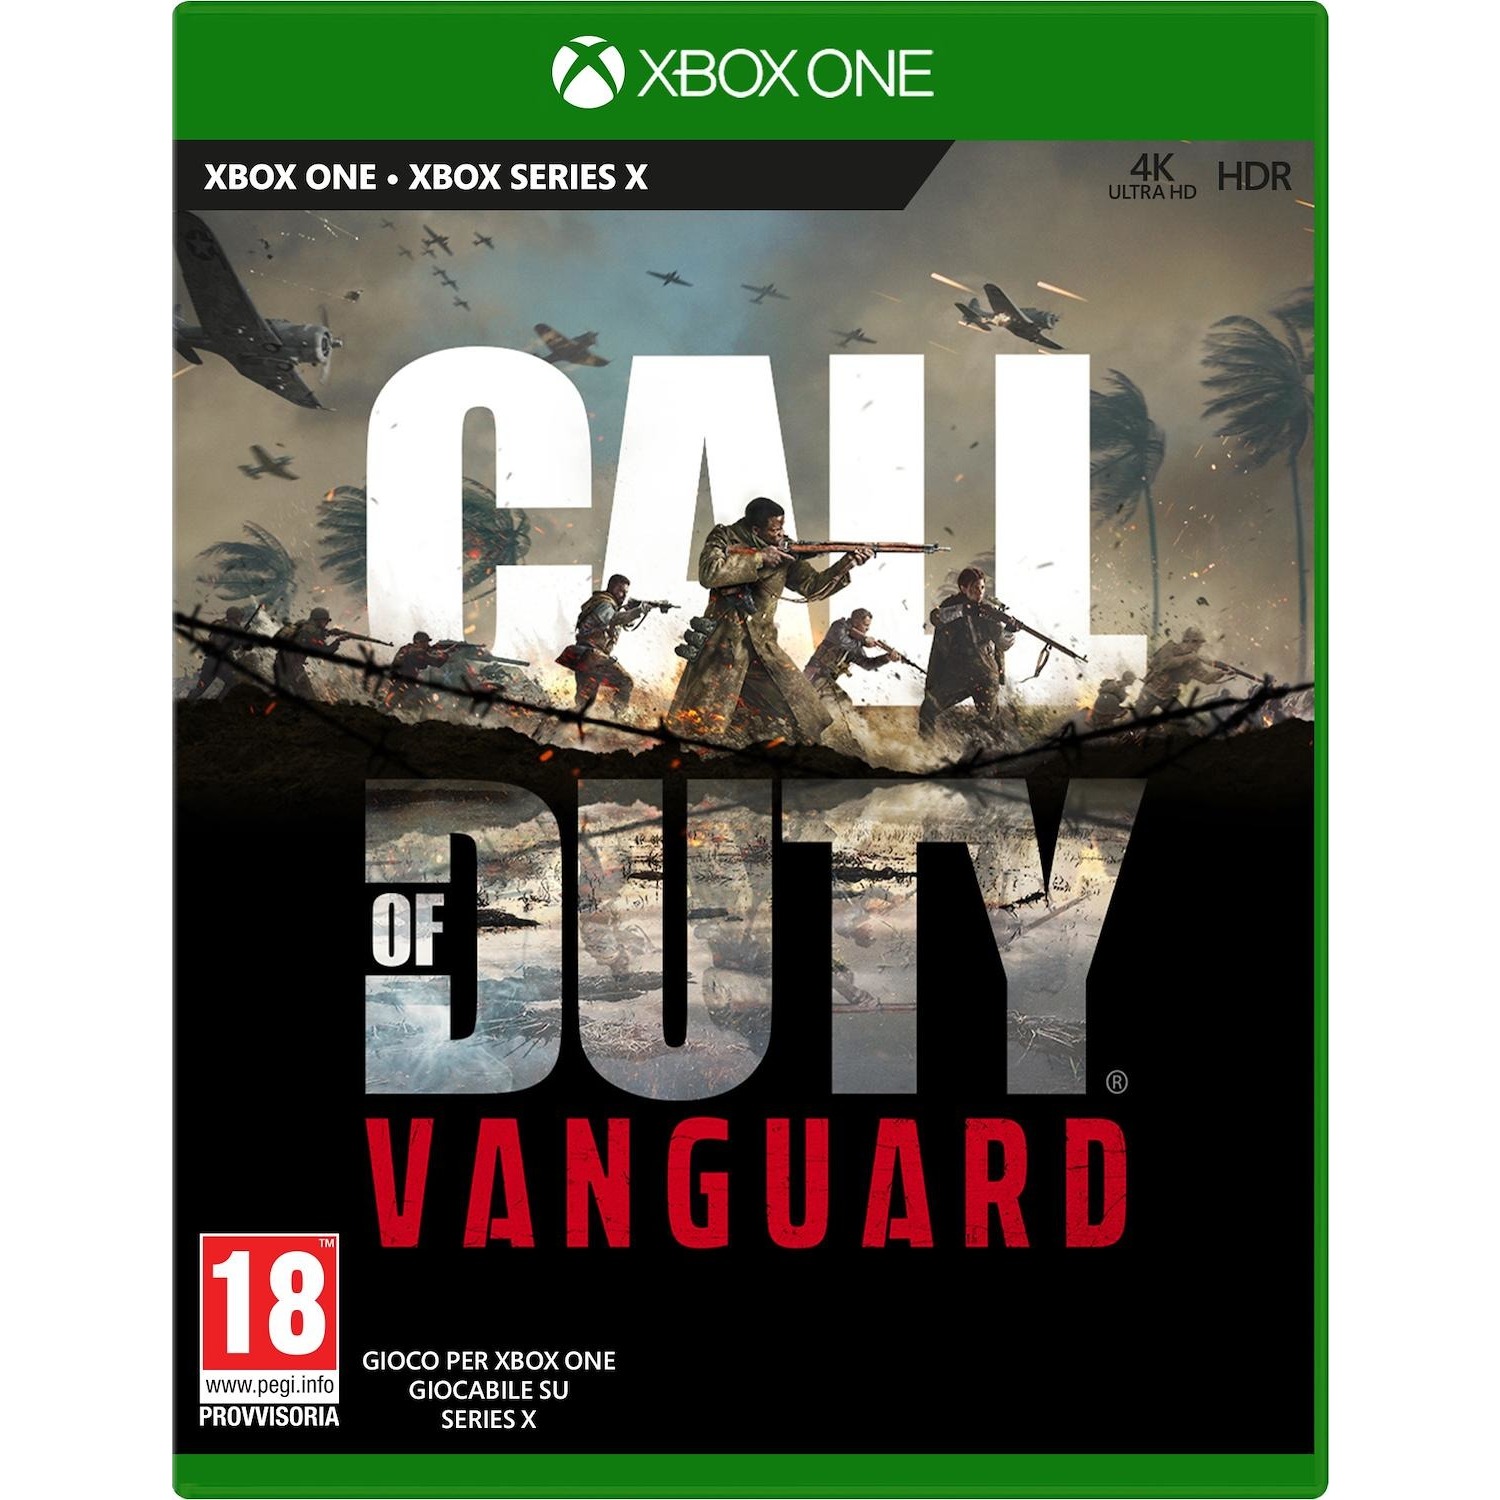 Immagine per Gioco XBOX One Call Of Duty Vanguard da DIMOStore